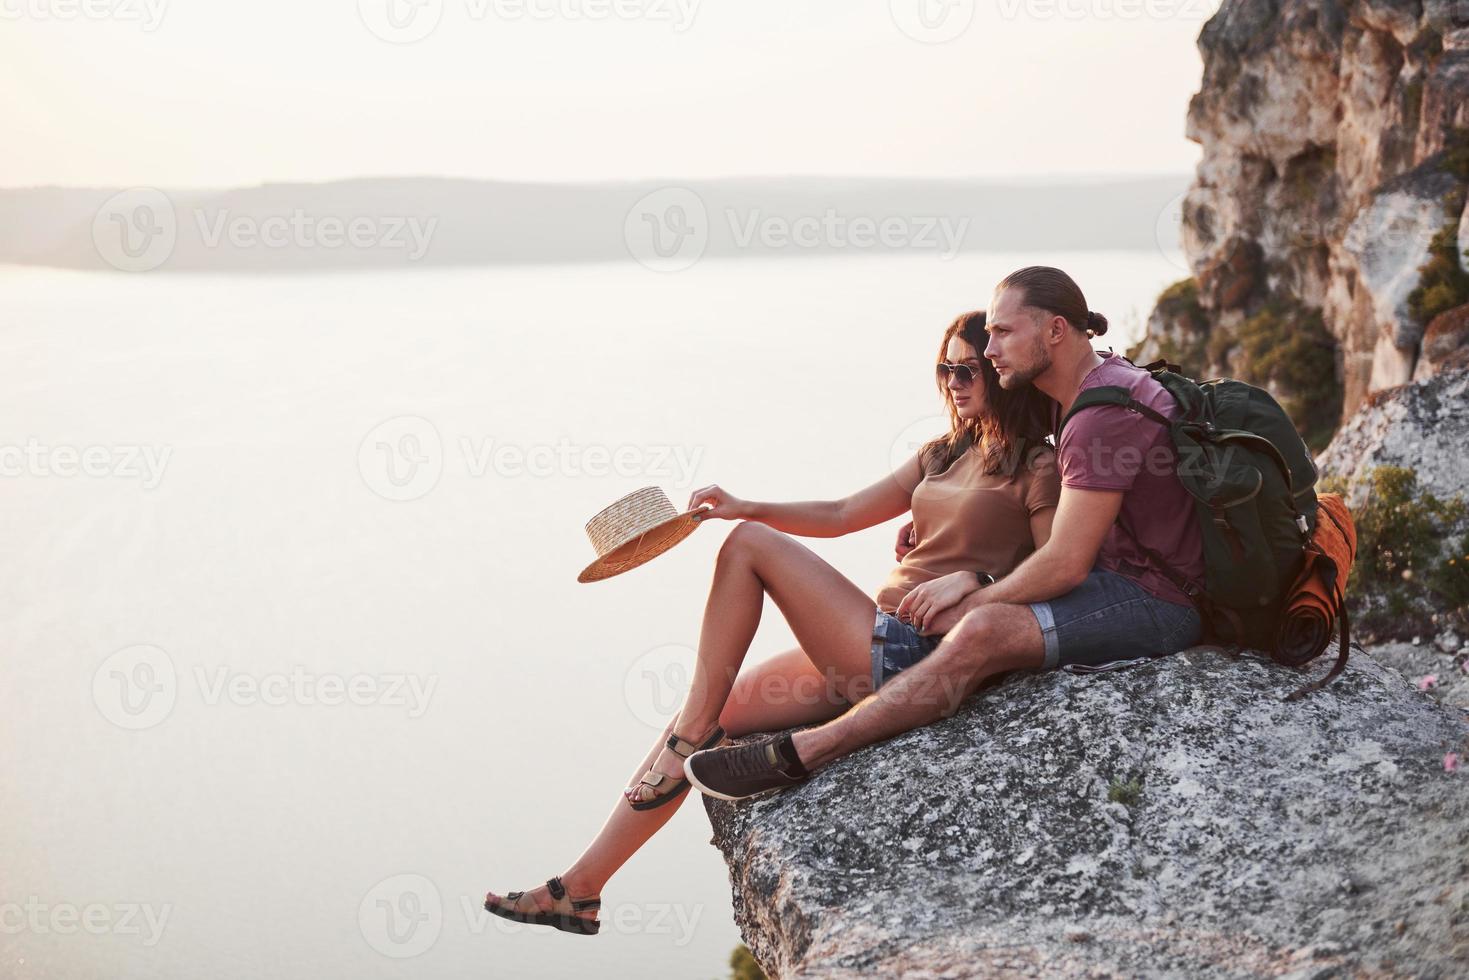 kramar par med ryggsäck sitter på toppen av berget njuter av utsikten kusten en flod eller sjö. resa längs berg och kust, frihet och aktivt livsstilskoncept foto